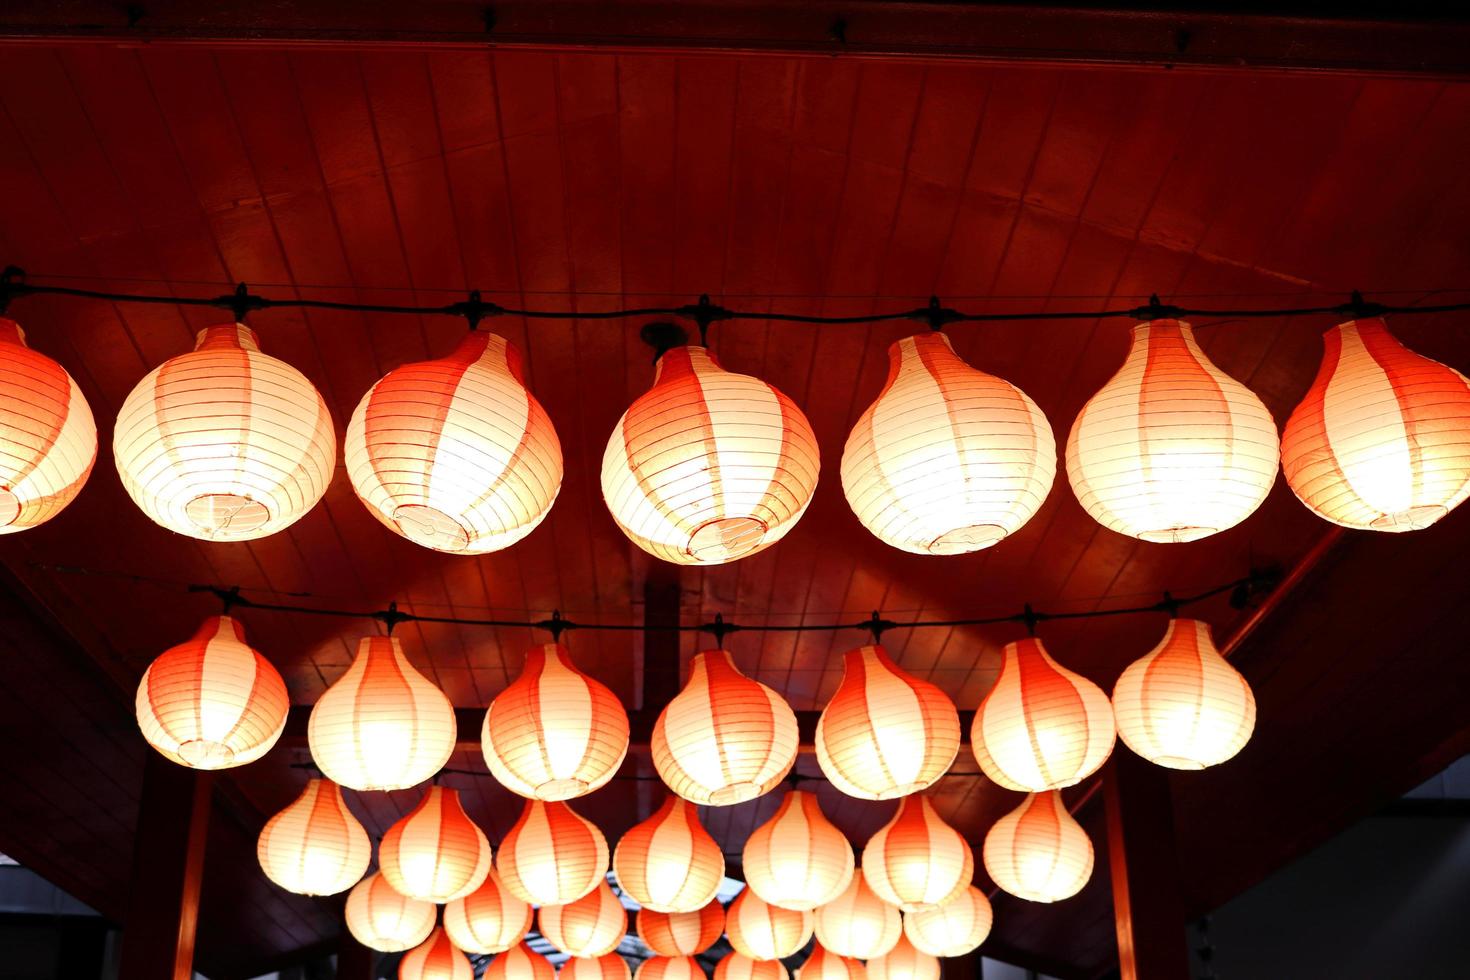 rode lampen houden rood houten plafond en verlichting vast, rijen lampen in japanse stijl. foto